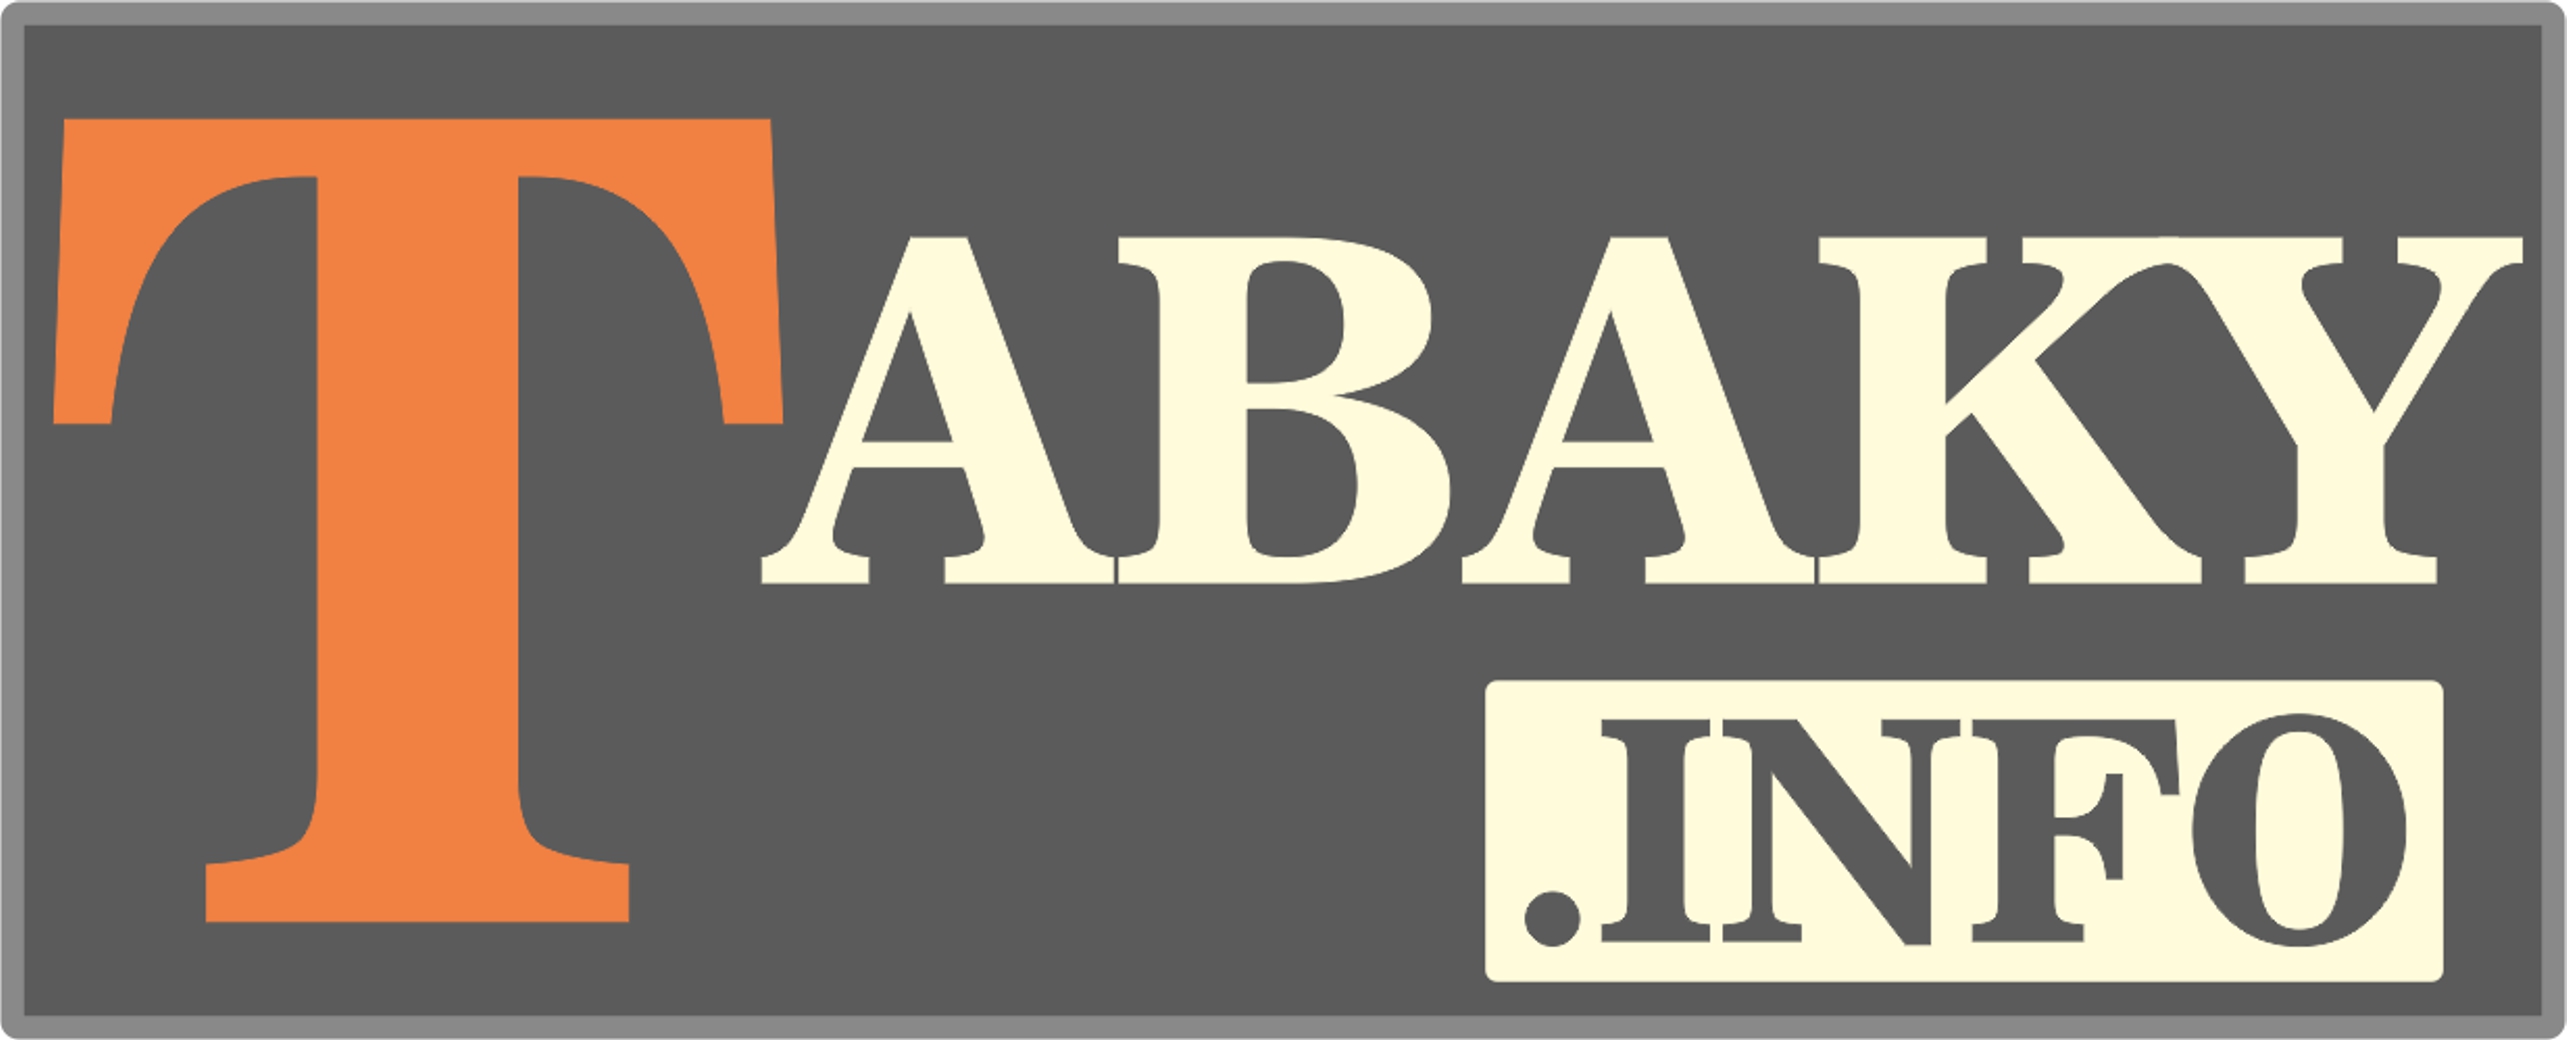 Tabaky.info_logo_13